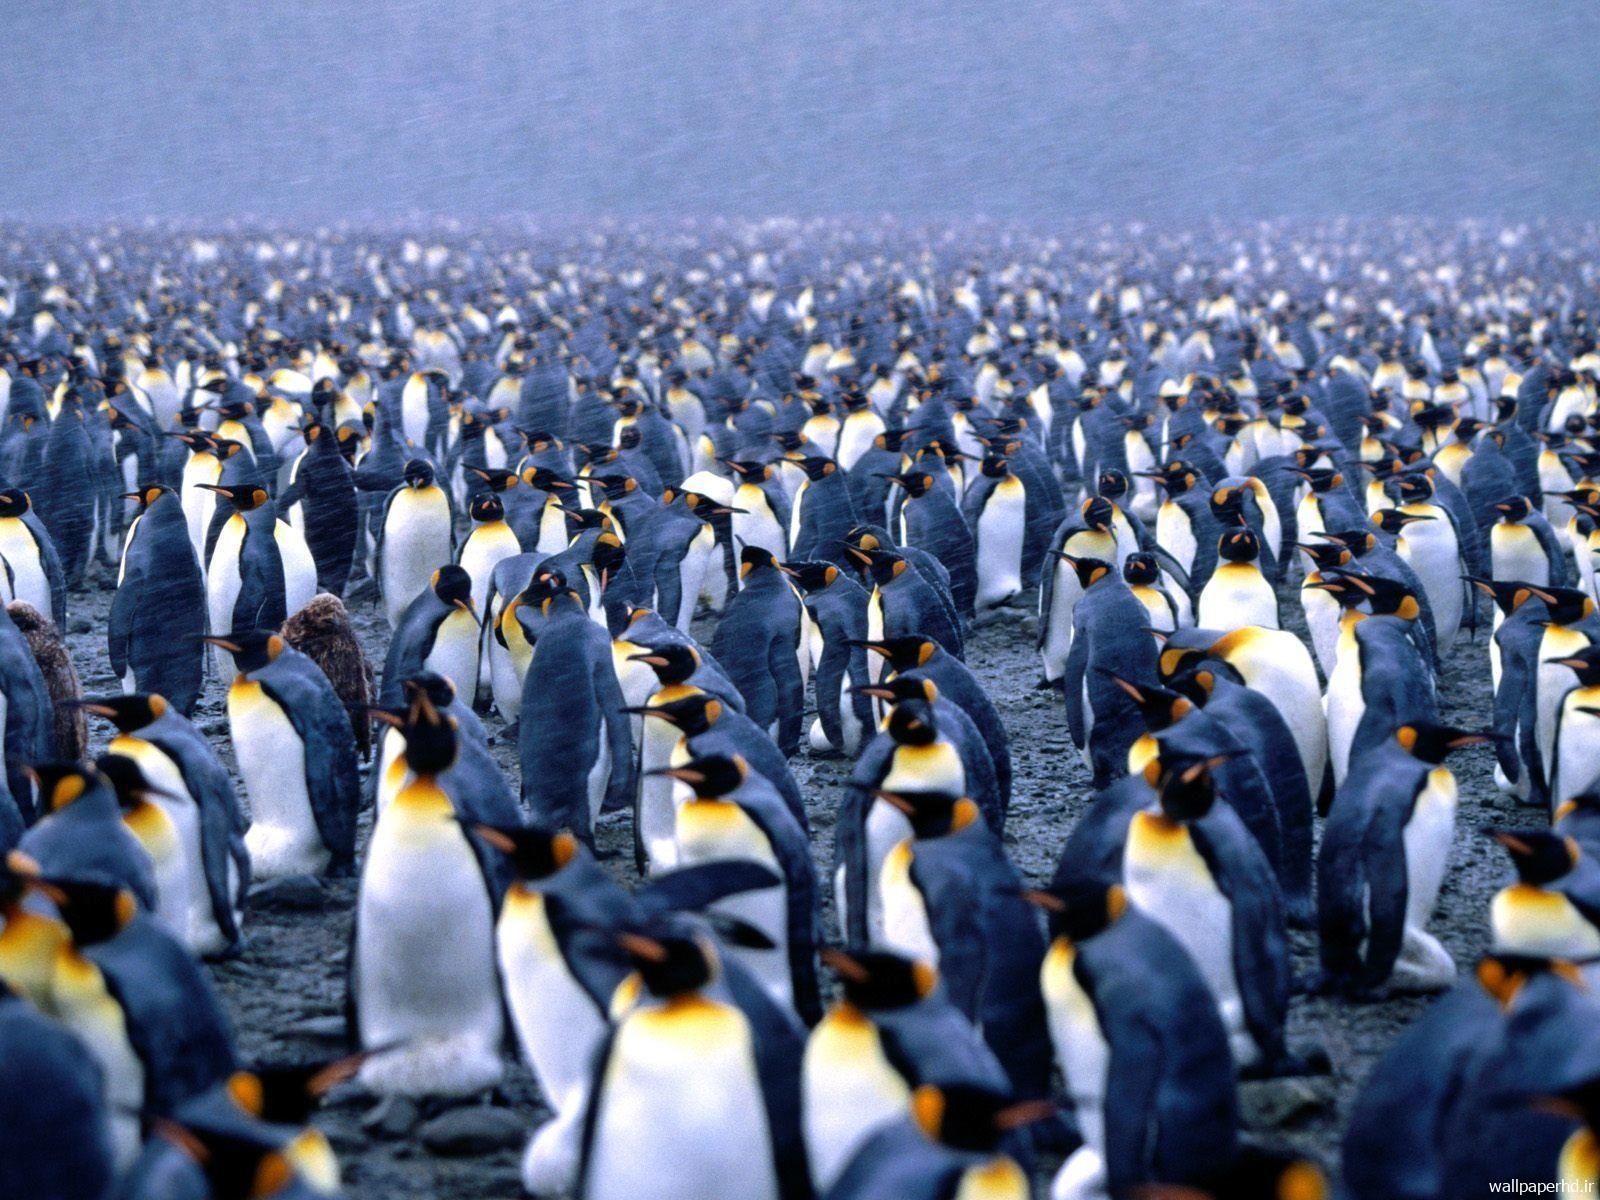  پنگوئن ها